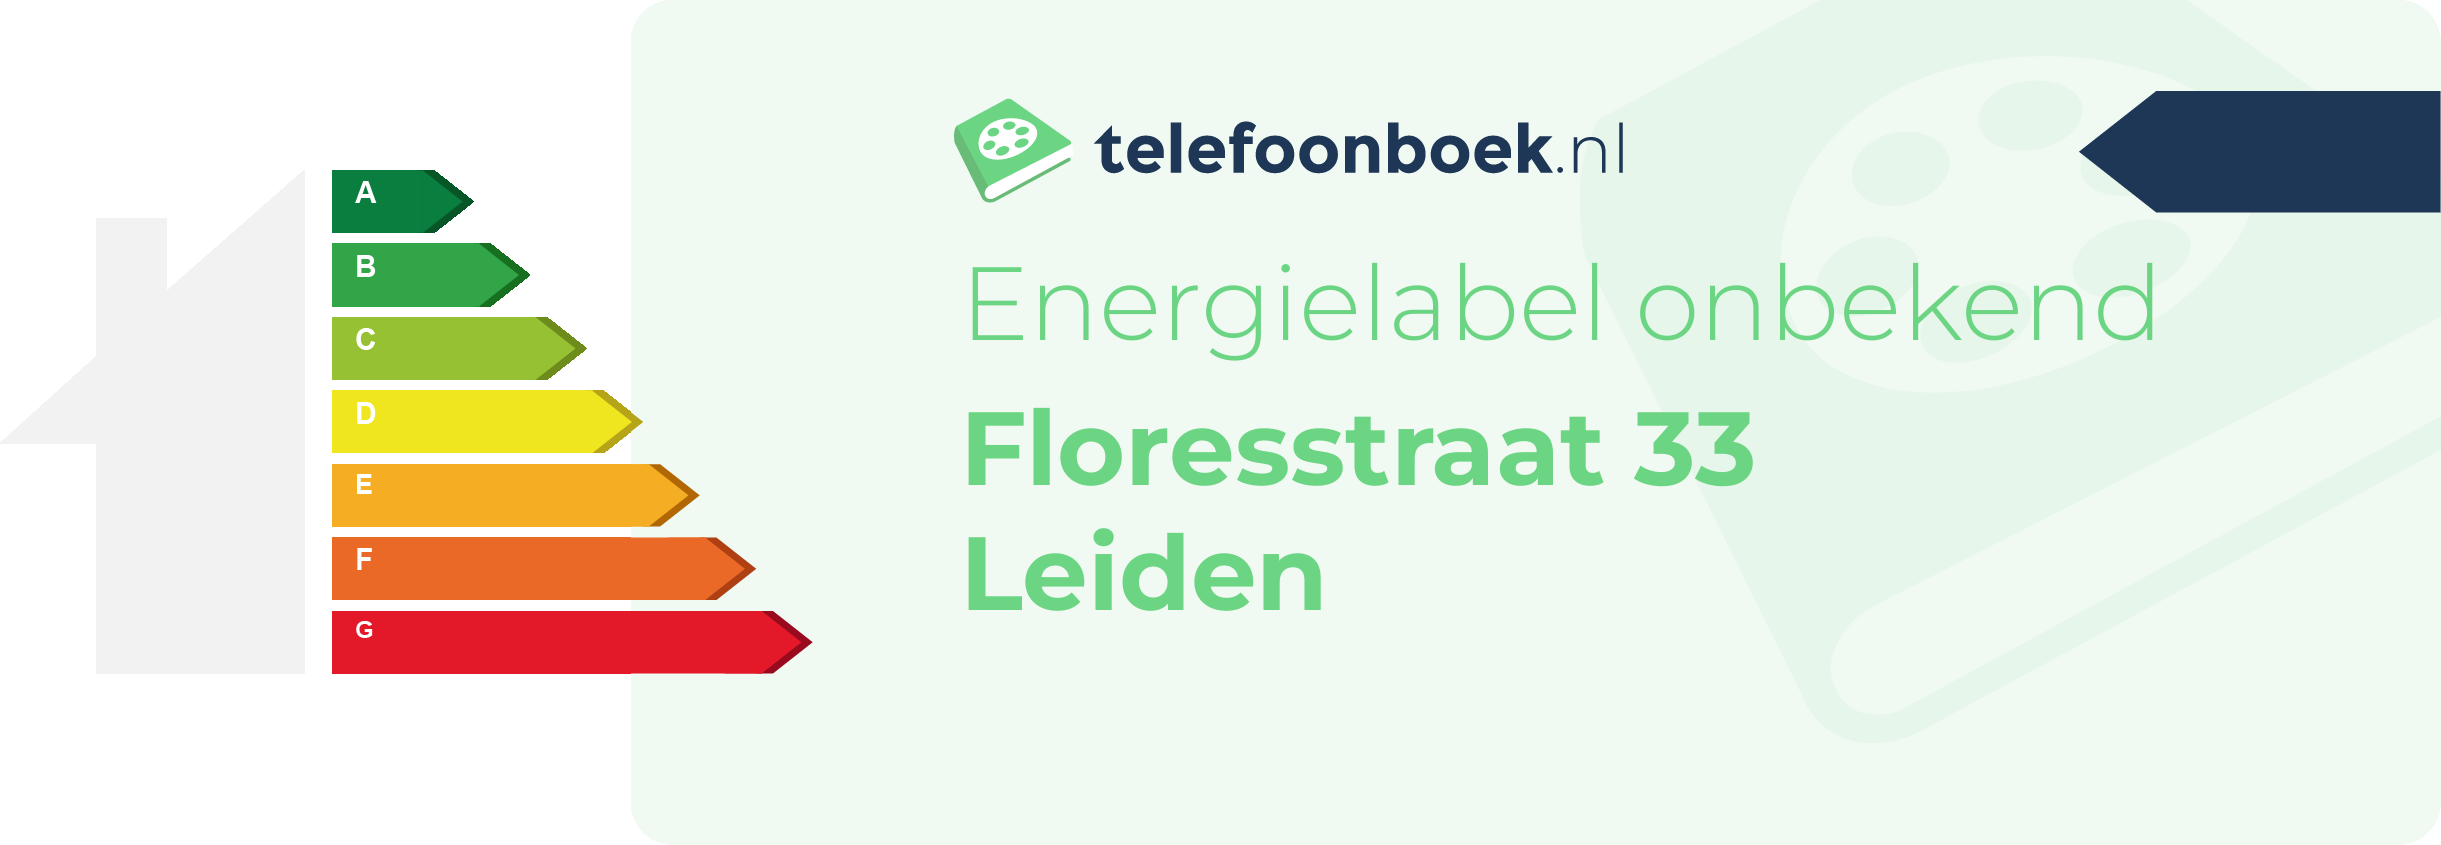 Energielabel Floresstraat 33 Leiden